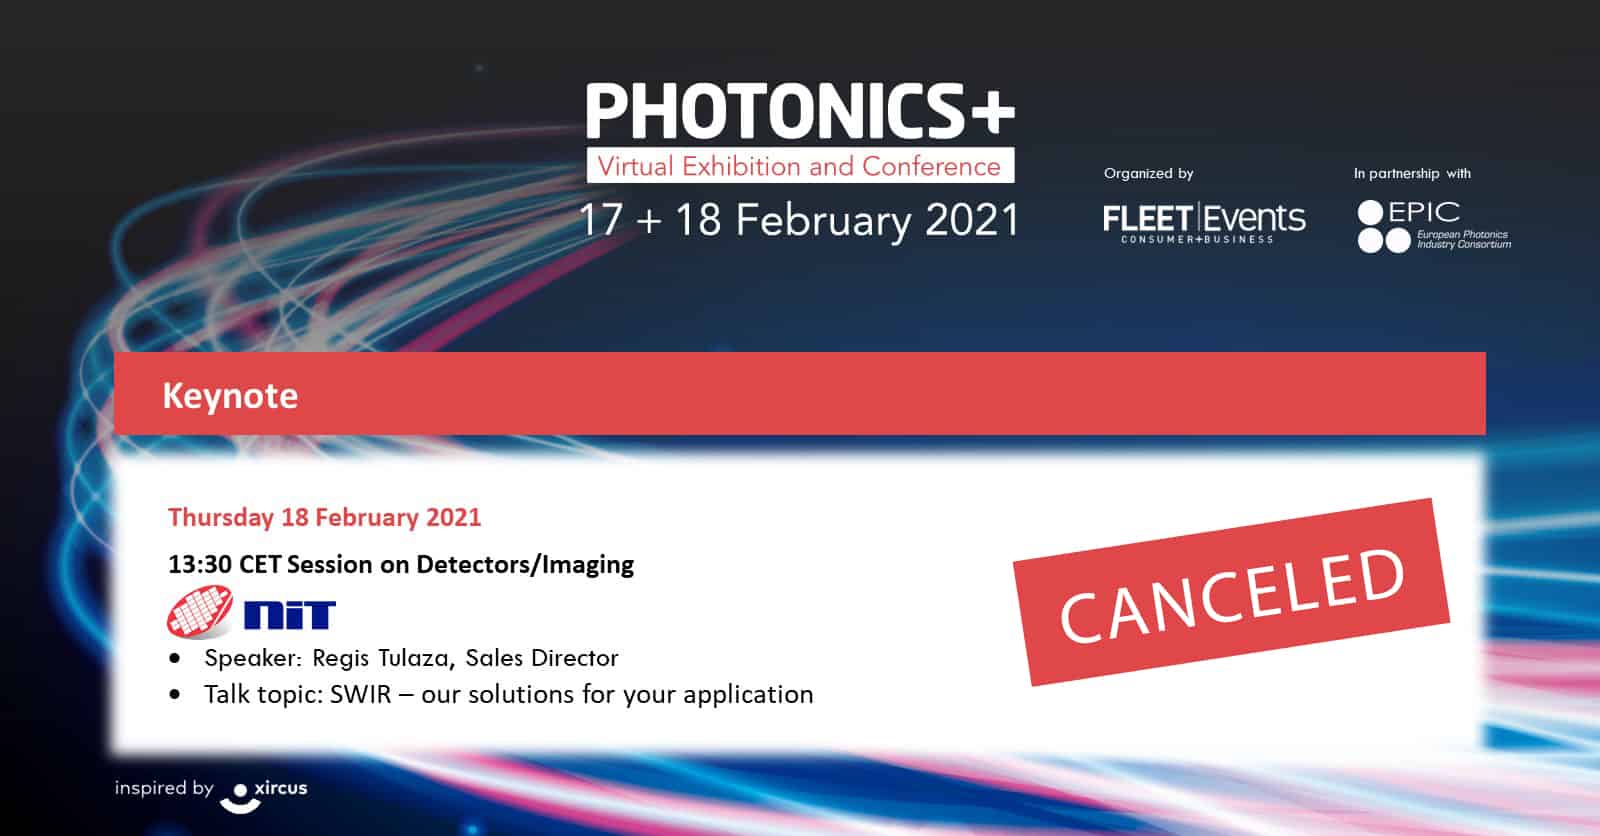 NIT product presentation at PhotonicsPlus was canceled